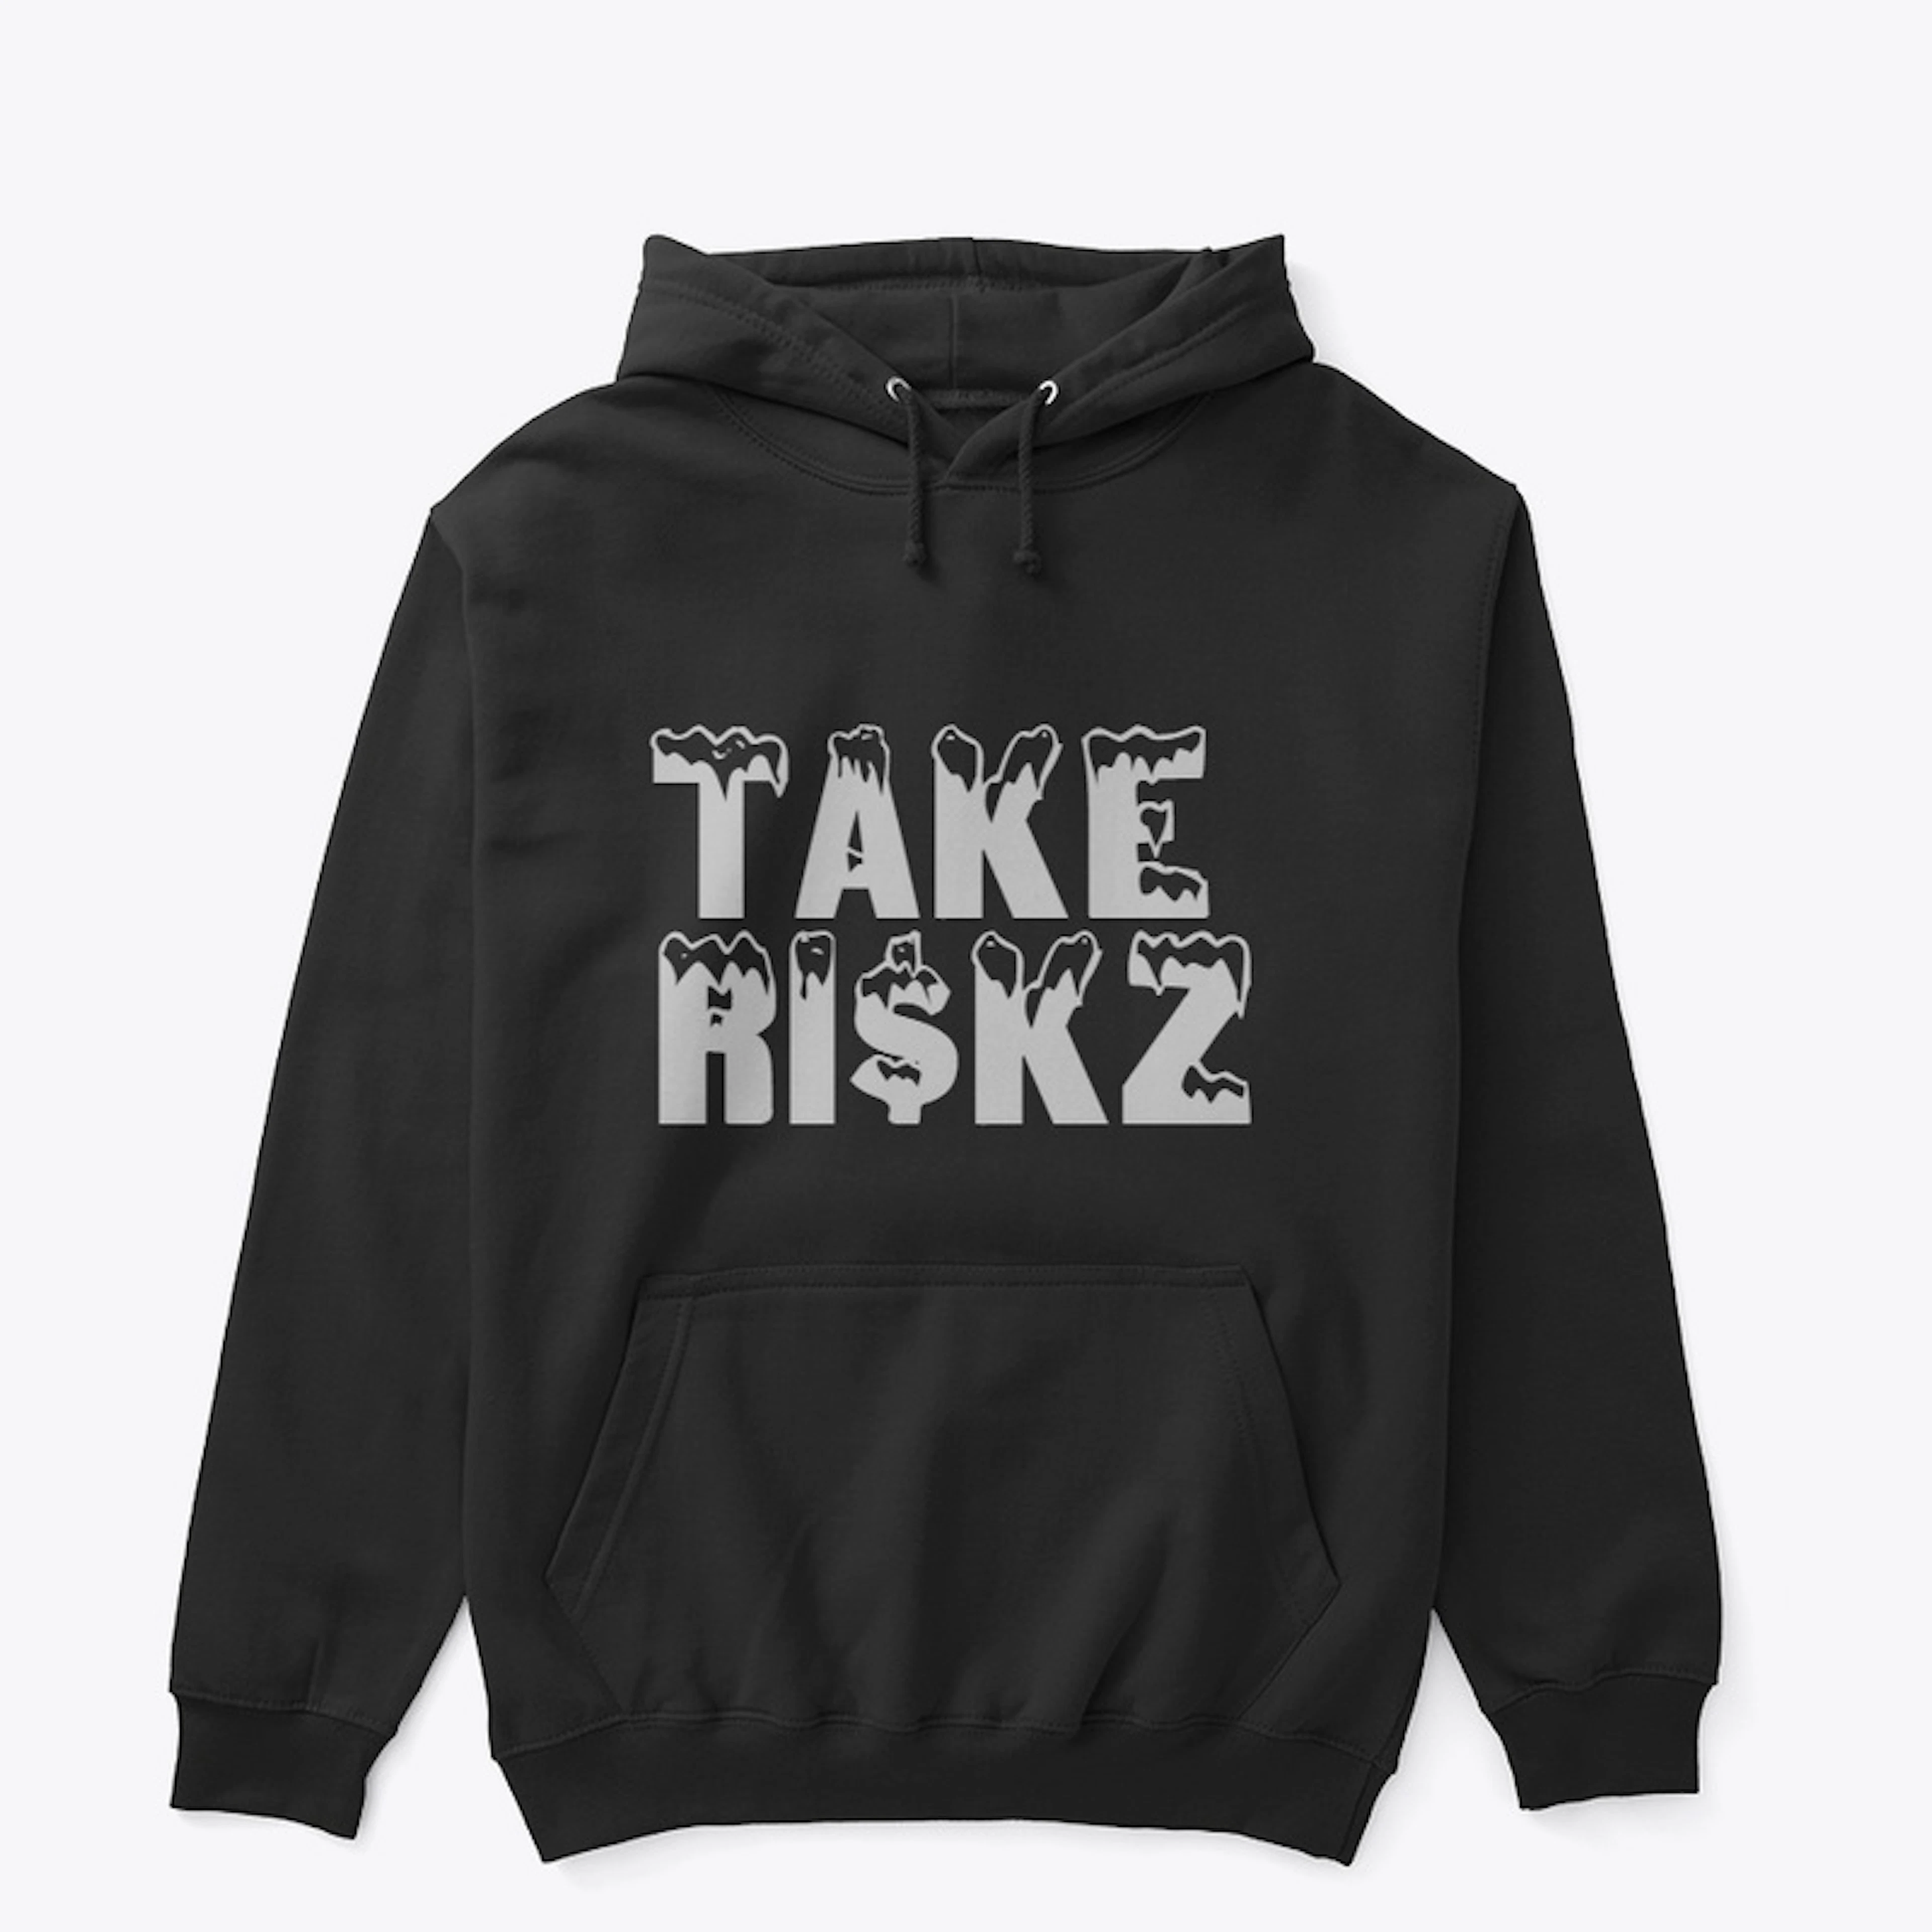 Take riskz